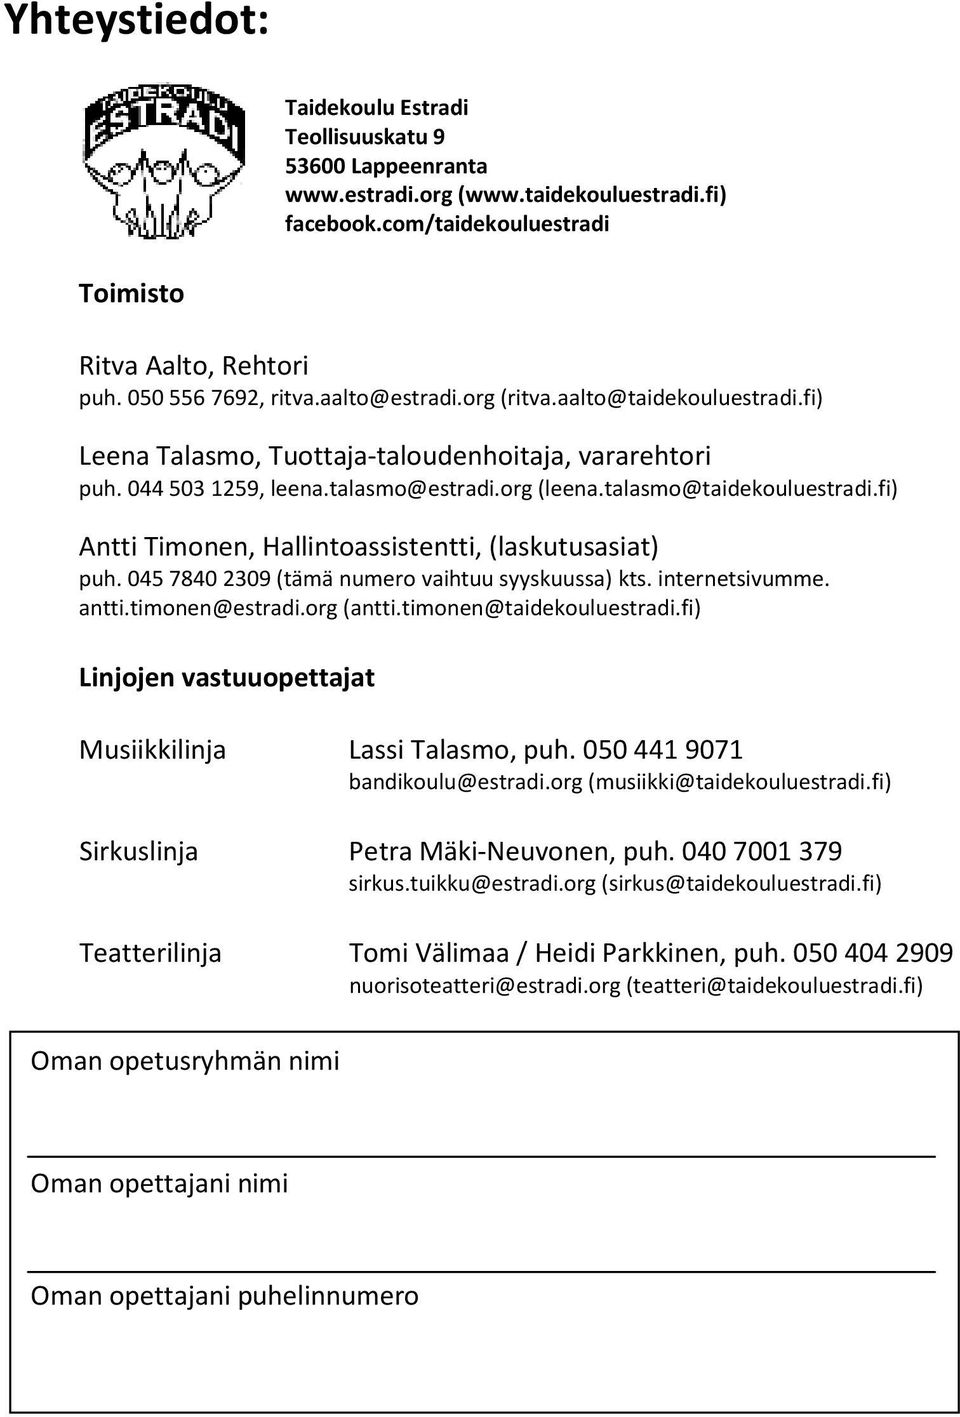 fi) Antti Timonen, Hallintoassistentti, (laskutusasiat) puh. 045 7840 2309 (tämä numero vaihtuu syyskuussa) kts. internetsivumme. antti.timonen@estradi.org (antti.timonen@taidekouluestradi.